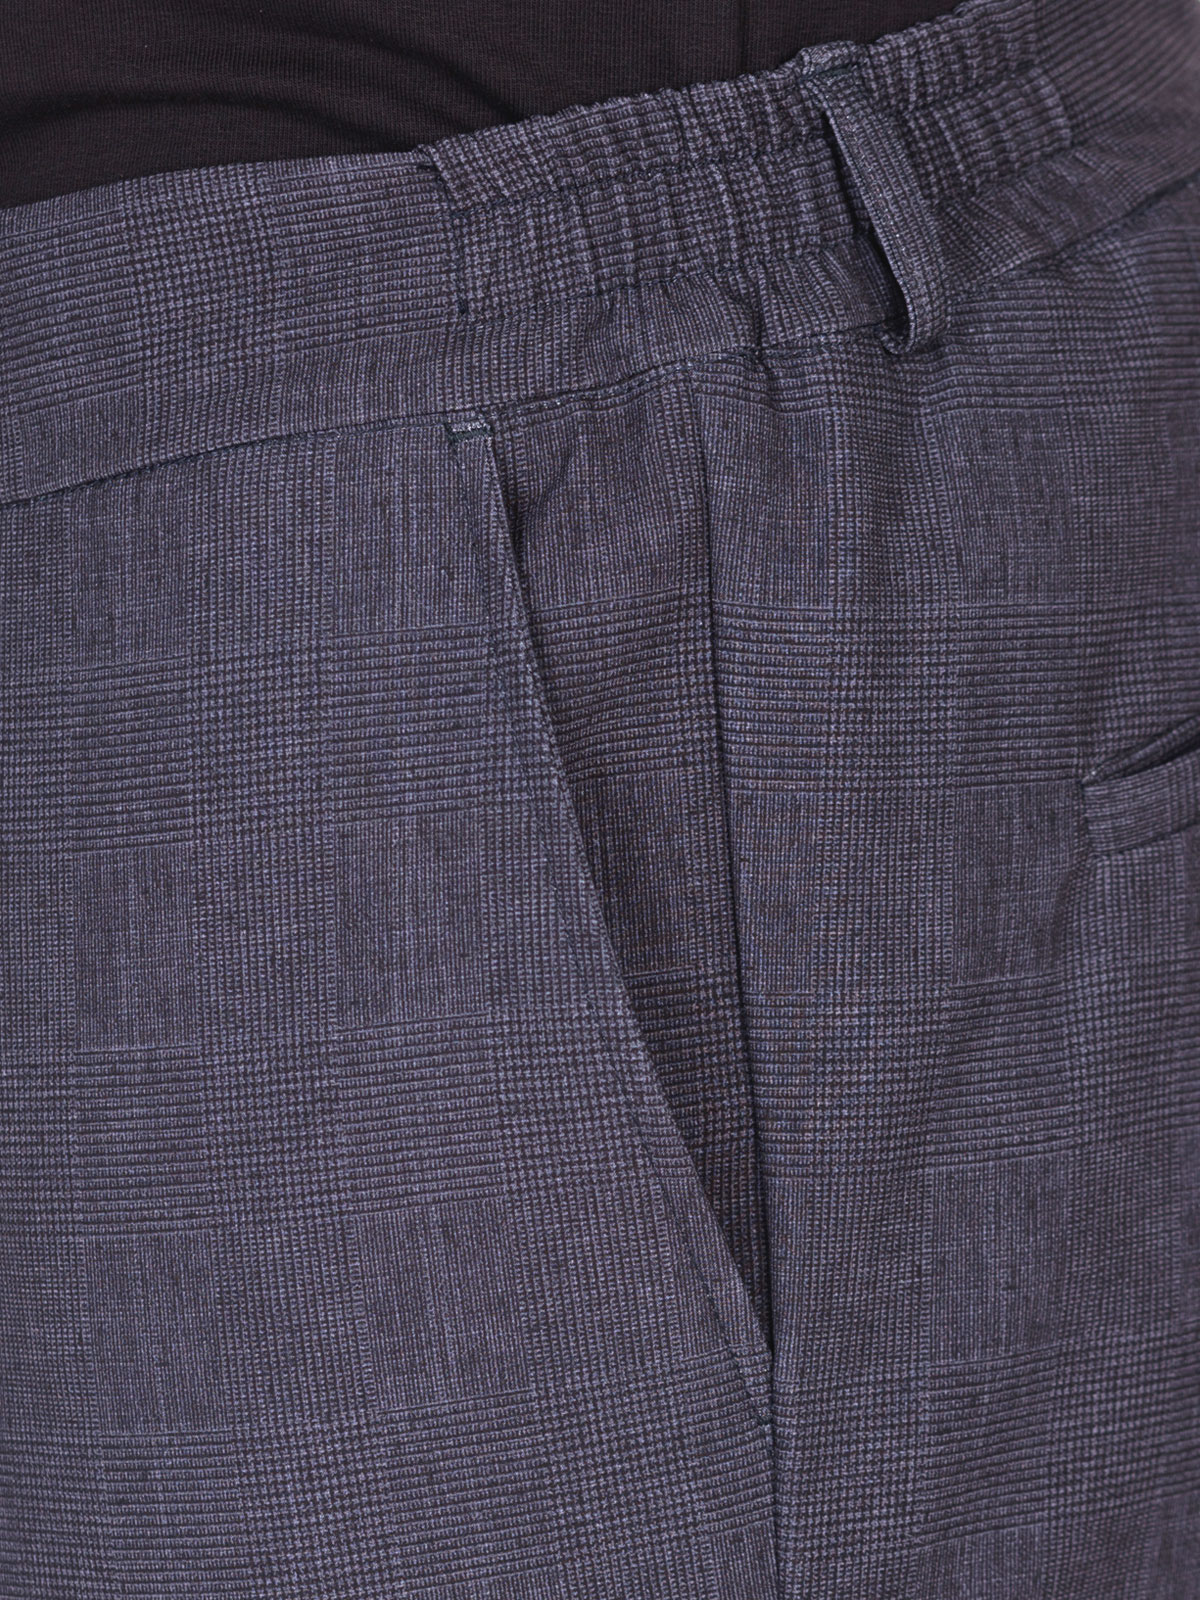 Mens trousers in dark gray - 29007 € 55.12 img3